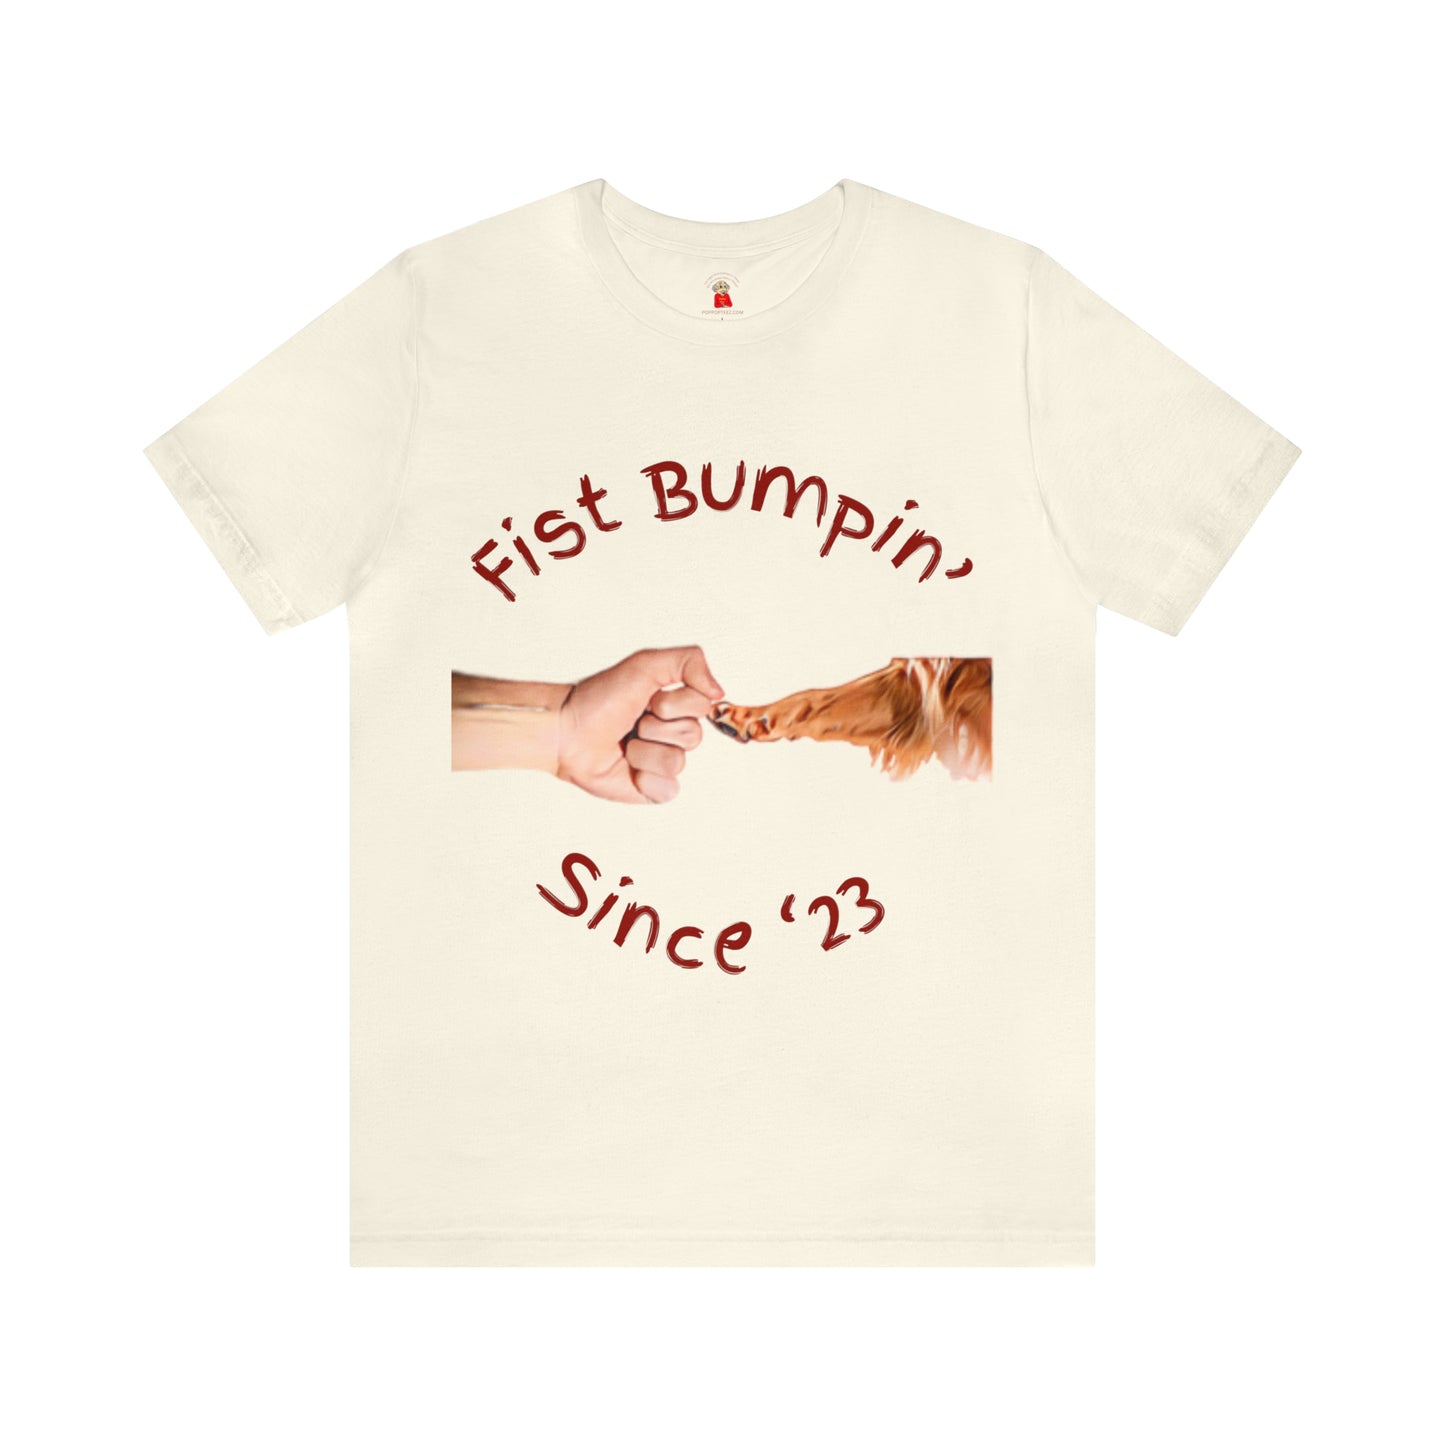 Fist Bumpin Since ‘23 Golden Retriever Paw Unisex Jersey Short Sleeve Tee